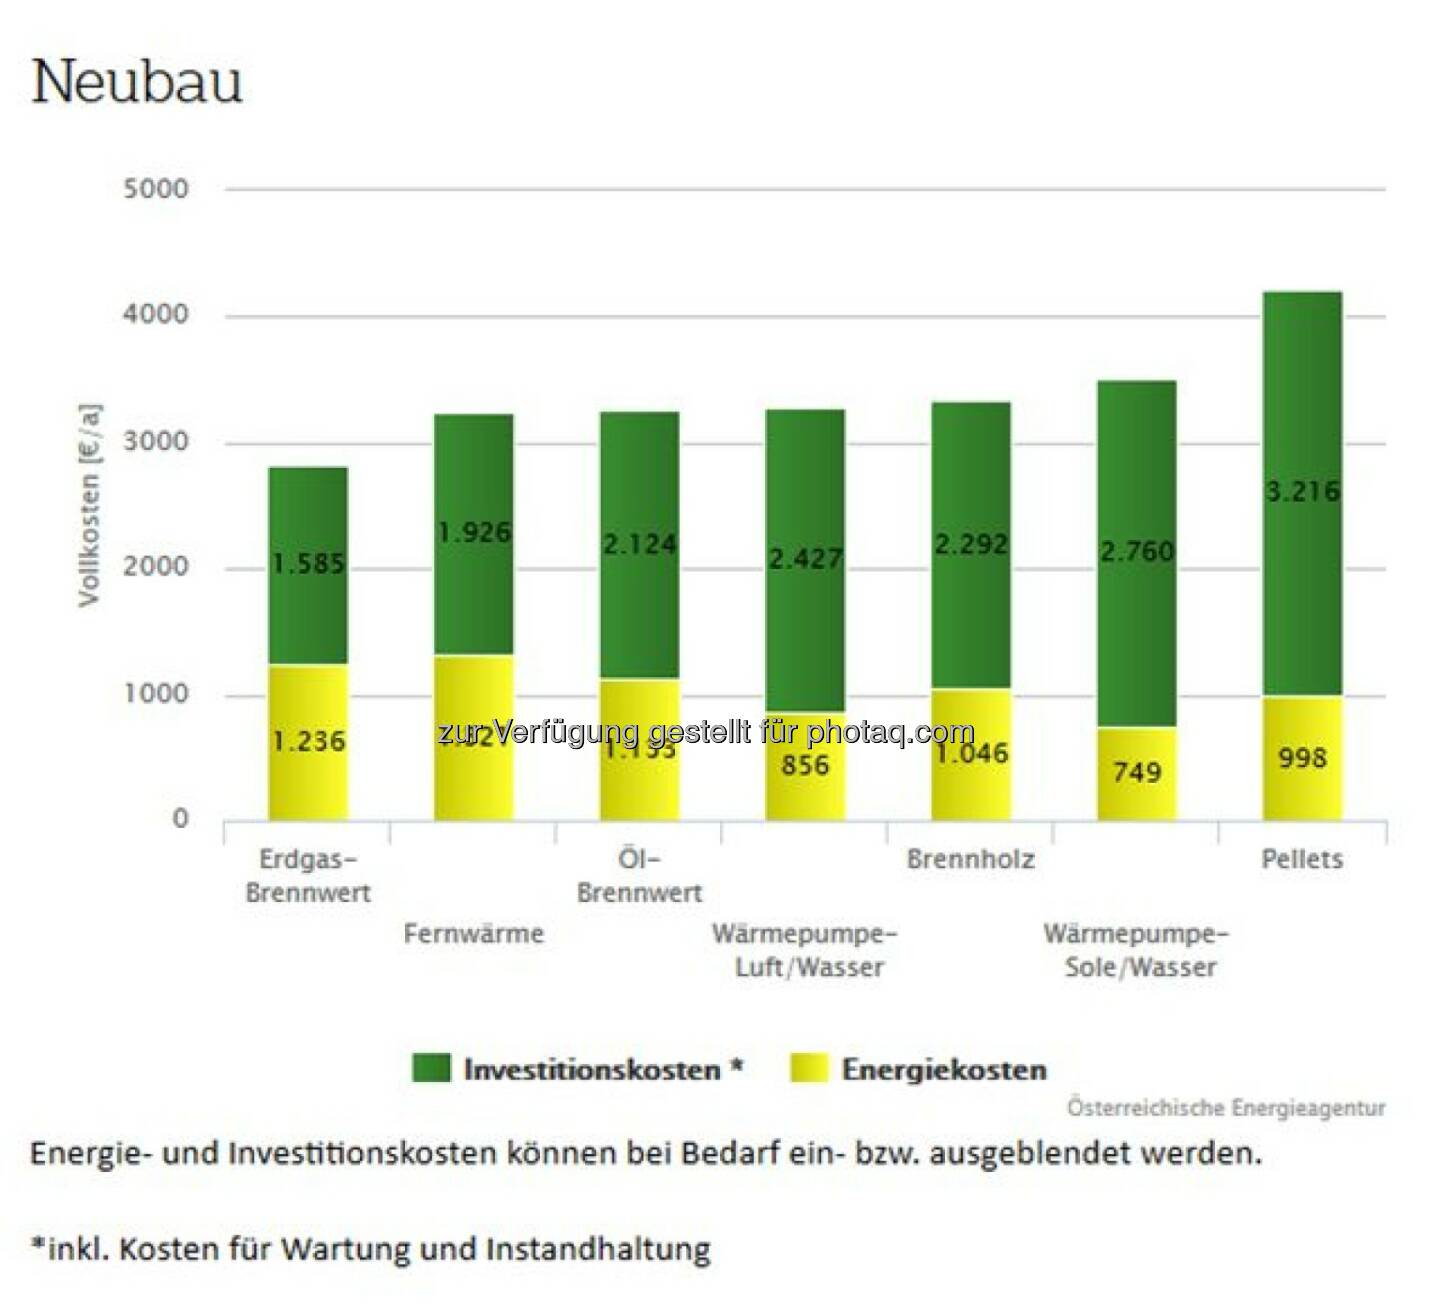 Fachverband Gas Wärme: Heizkostenvergleich: Erdgas gewinnt in allen Kategorien (Bild: Österreichische Energieagentur)